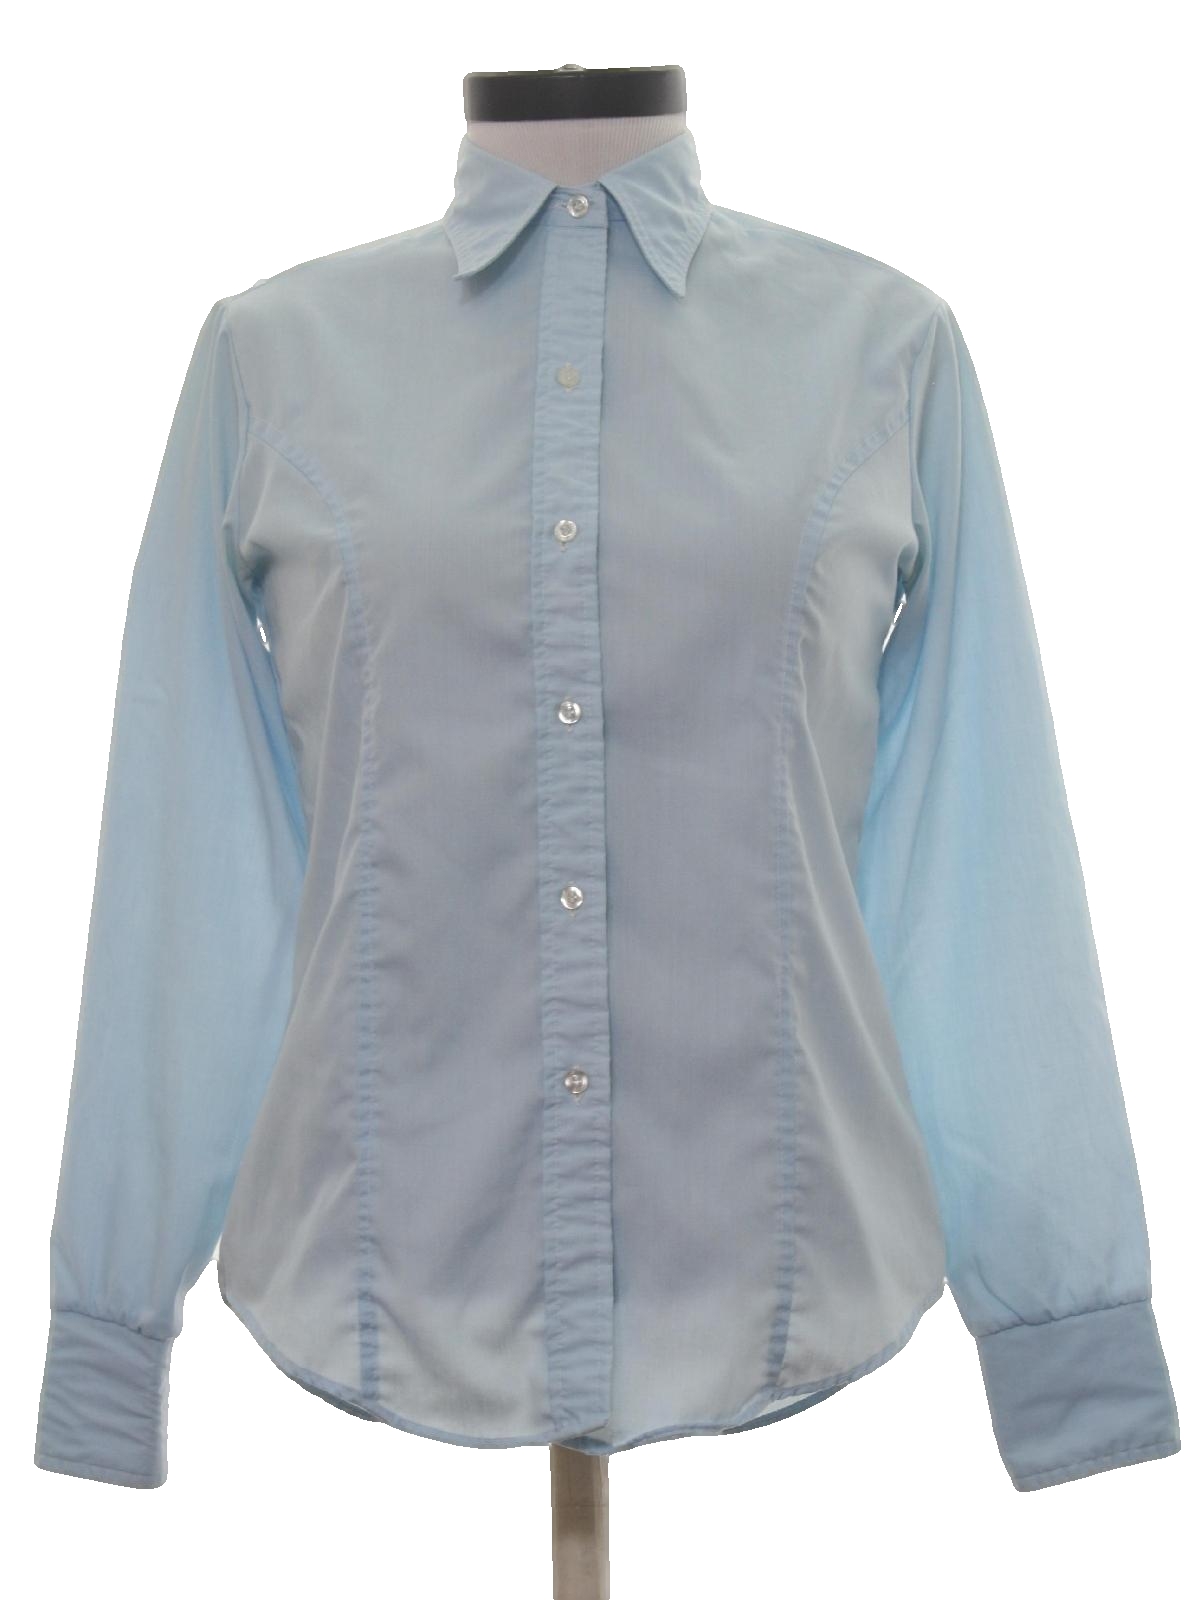 Retro 70s Shirt (Stuffed Shirt) : 70s -Stuffed Shirt- Womens light blue ...